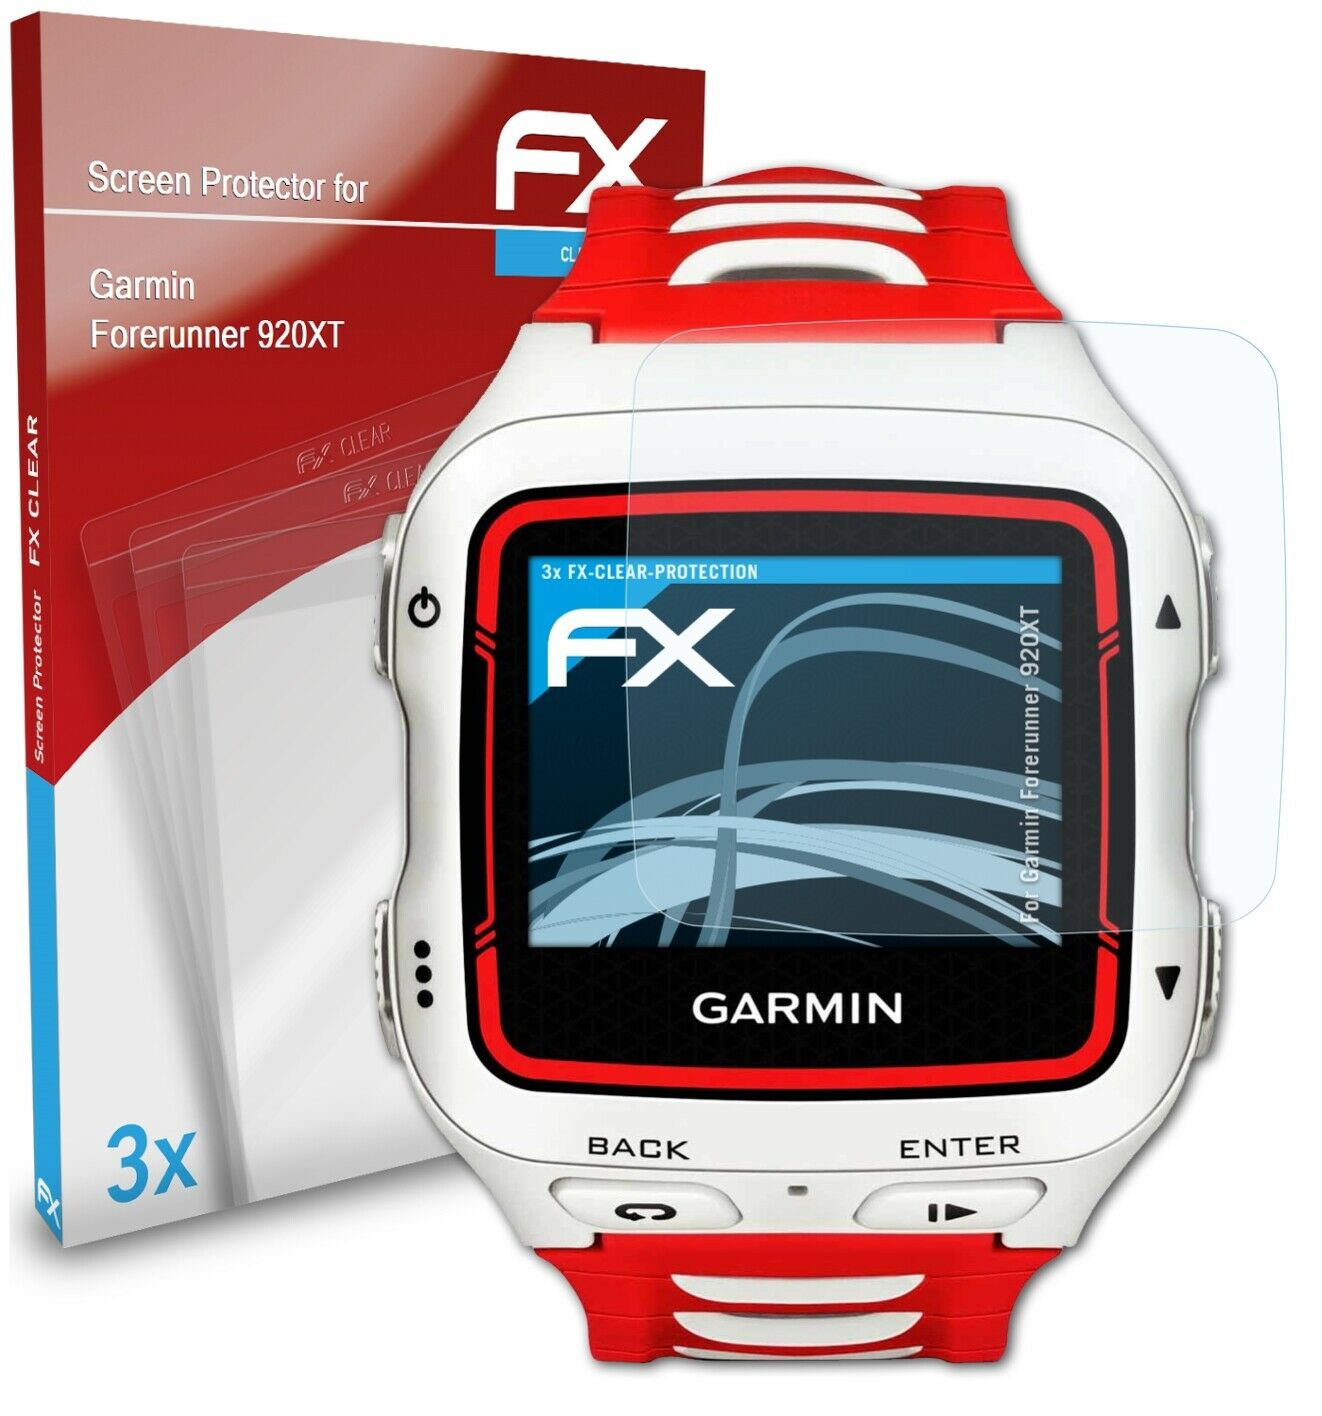 atFoliX 3x Screen Protector for Garmin Forerunner 920XT clear